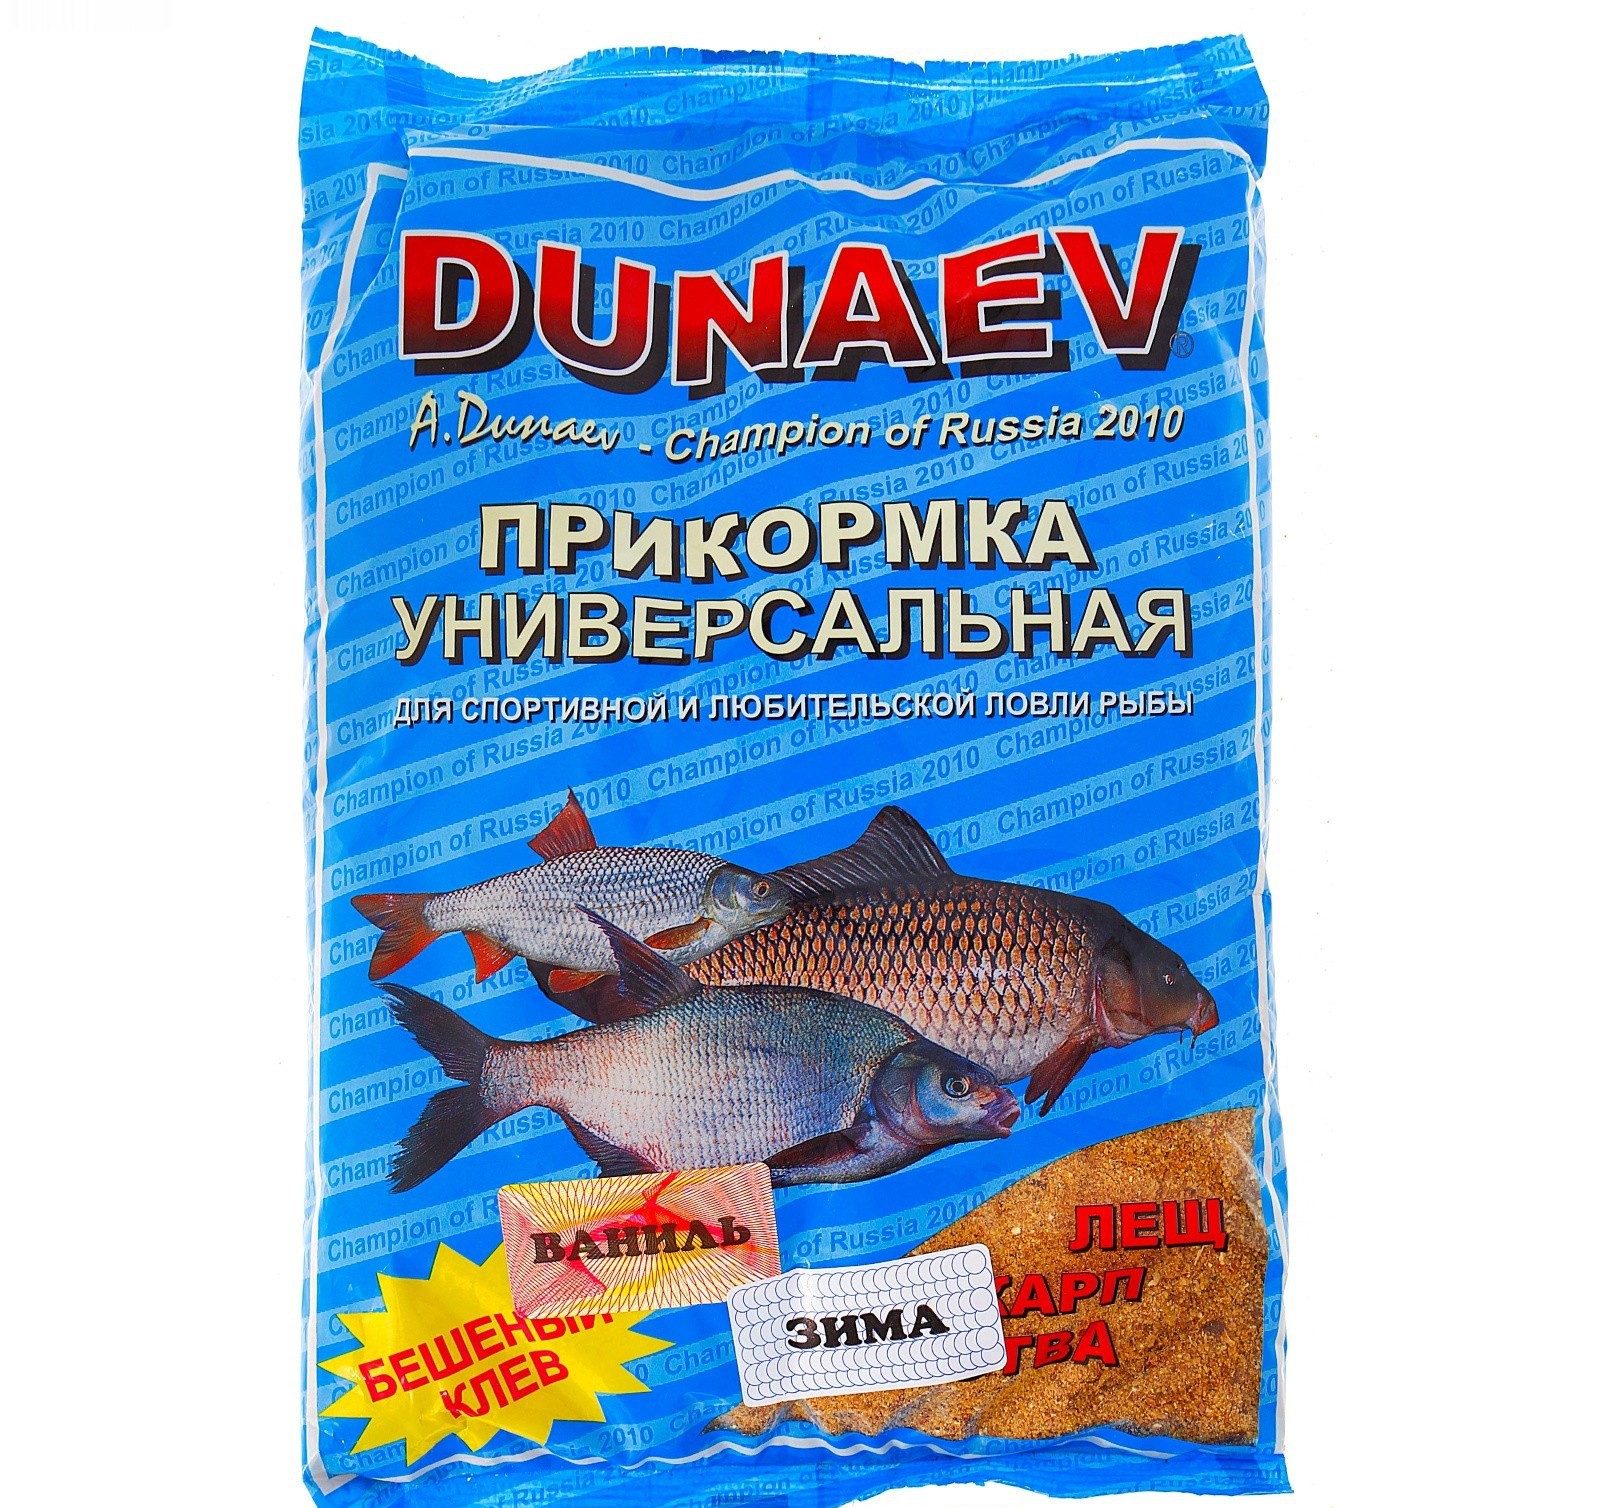 Домашняя зимняя прикормка. Прикормка Дунаев универсальная лещ. Прикорм для рыбы. Прикормка для форели. Приманка для рыбы Дунаев.